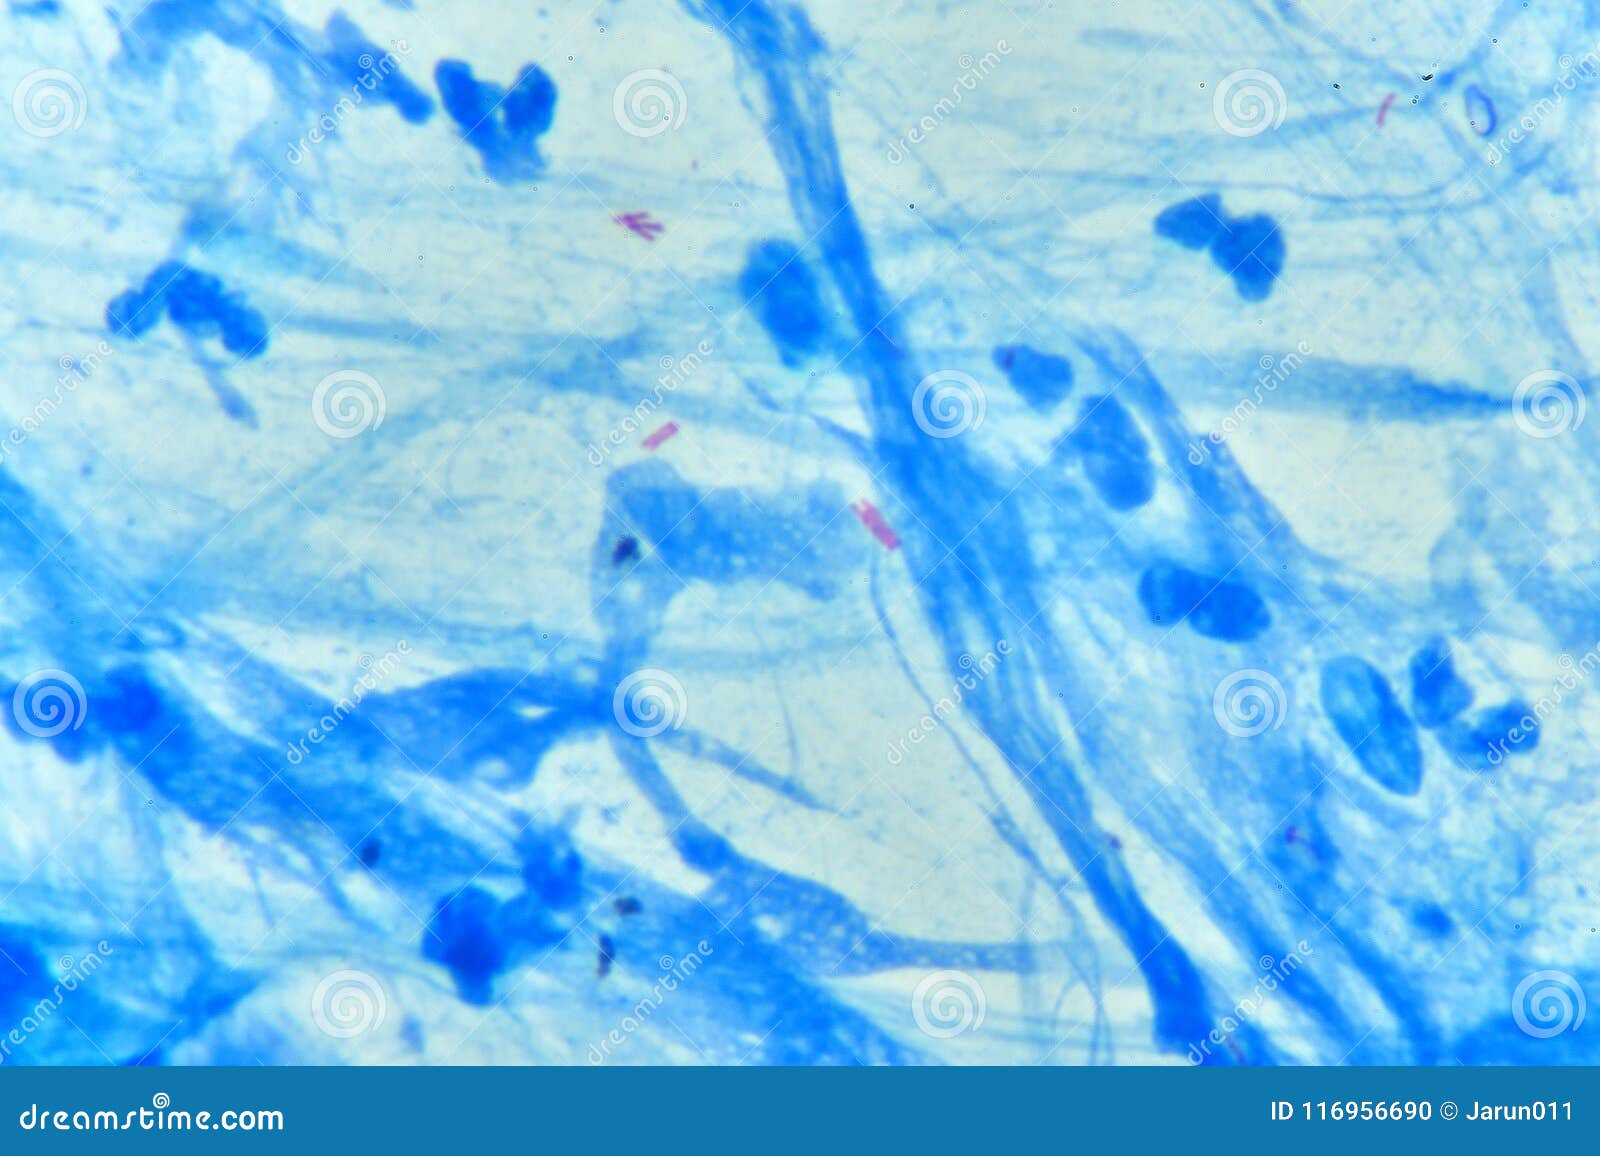 Кумы в мокроте. Mycobacterium tuberculosis в мокроте. Mycobacterium tuberculosis в мокроте больного,. Микобактерии изображение в микроскоп. Микроскопия мокроты на БК.